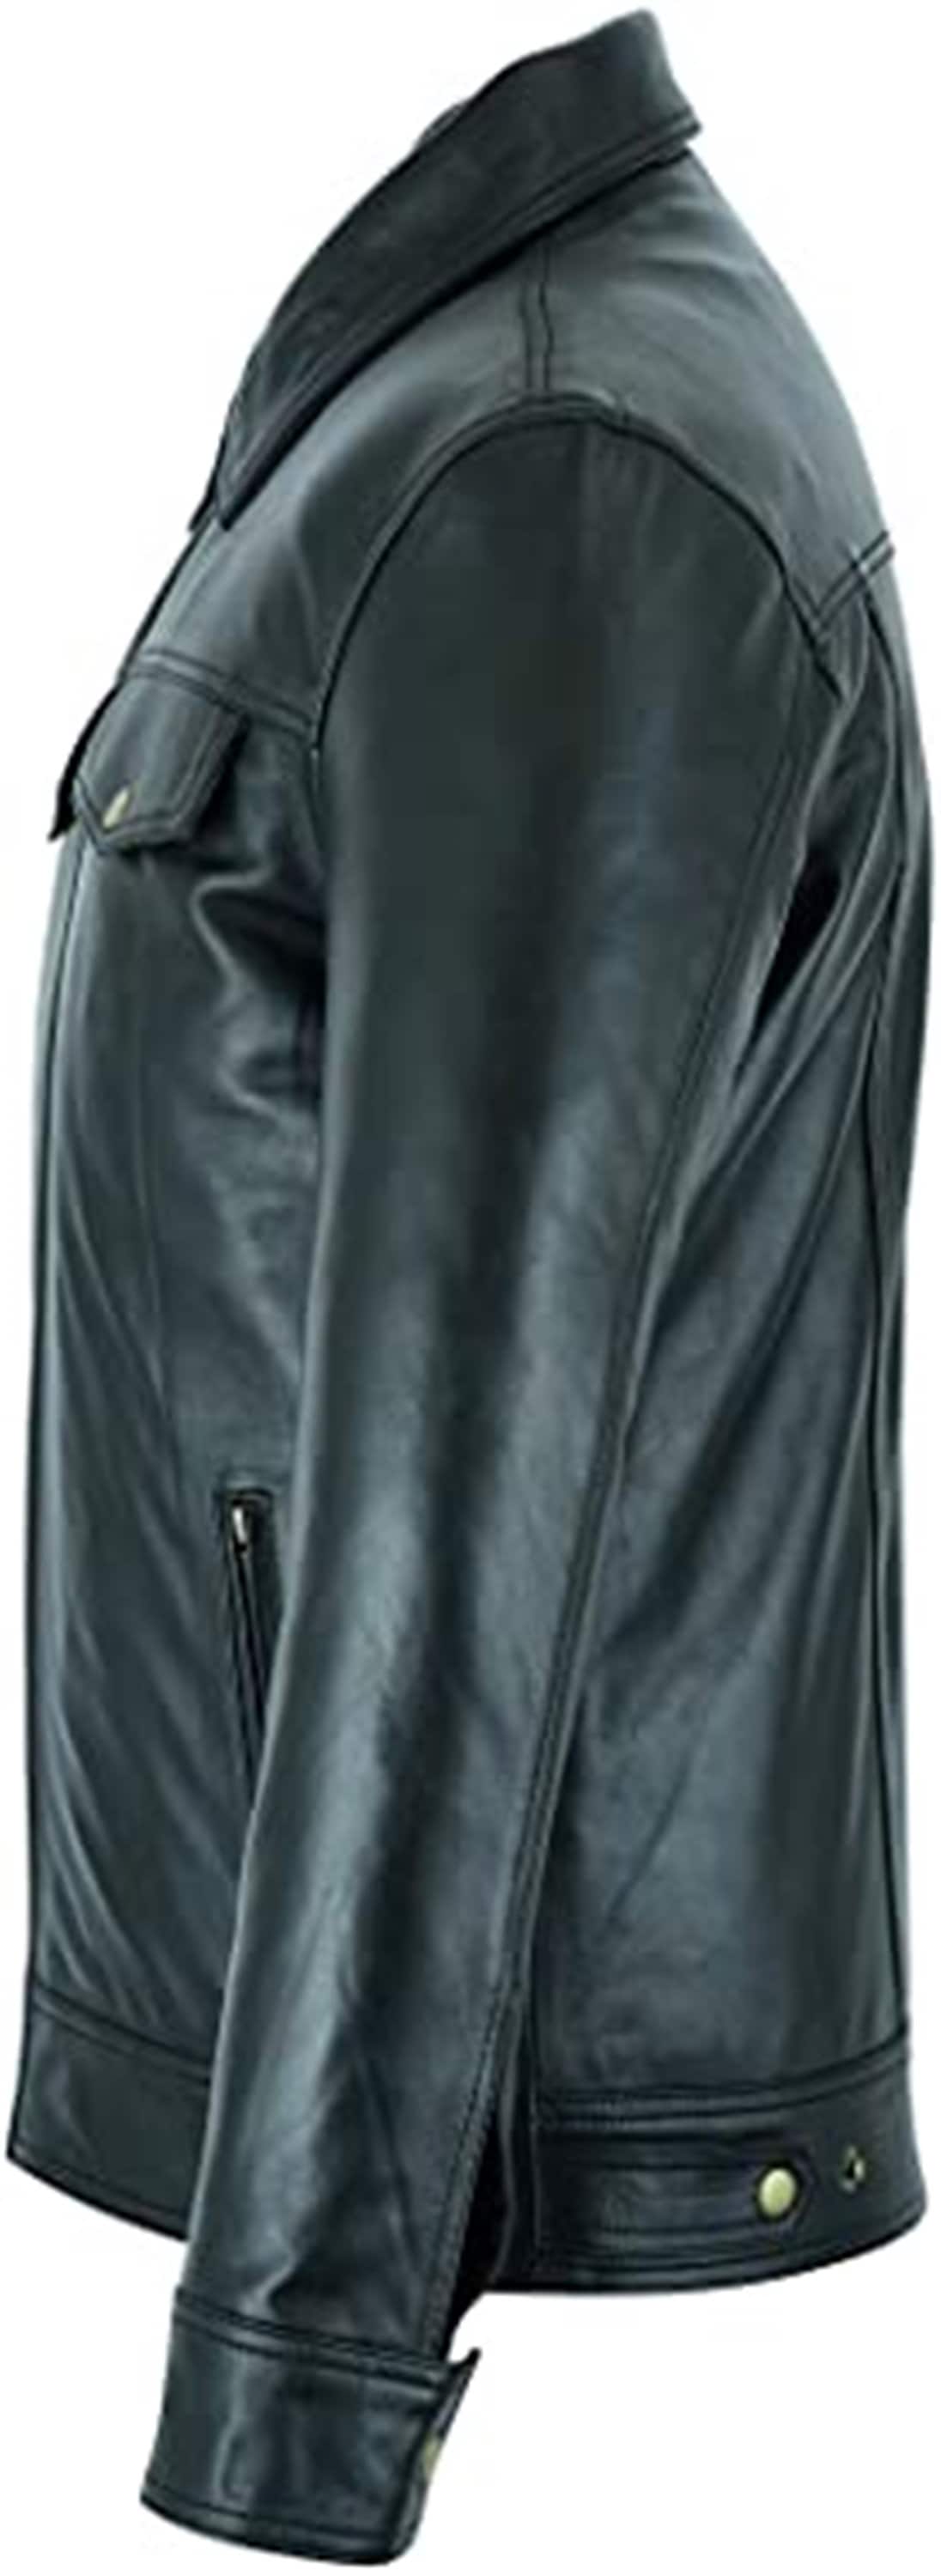 Men's Genuine Black Vintage Leather Jacket